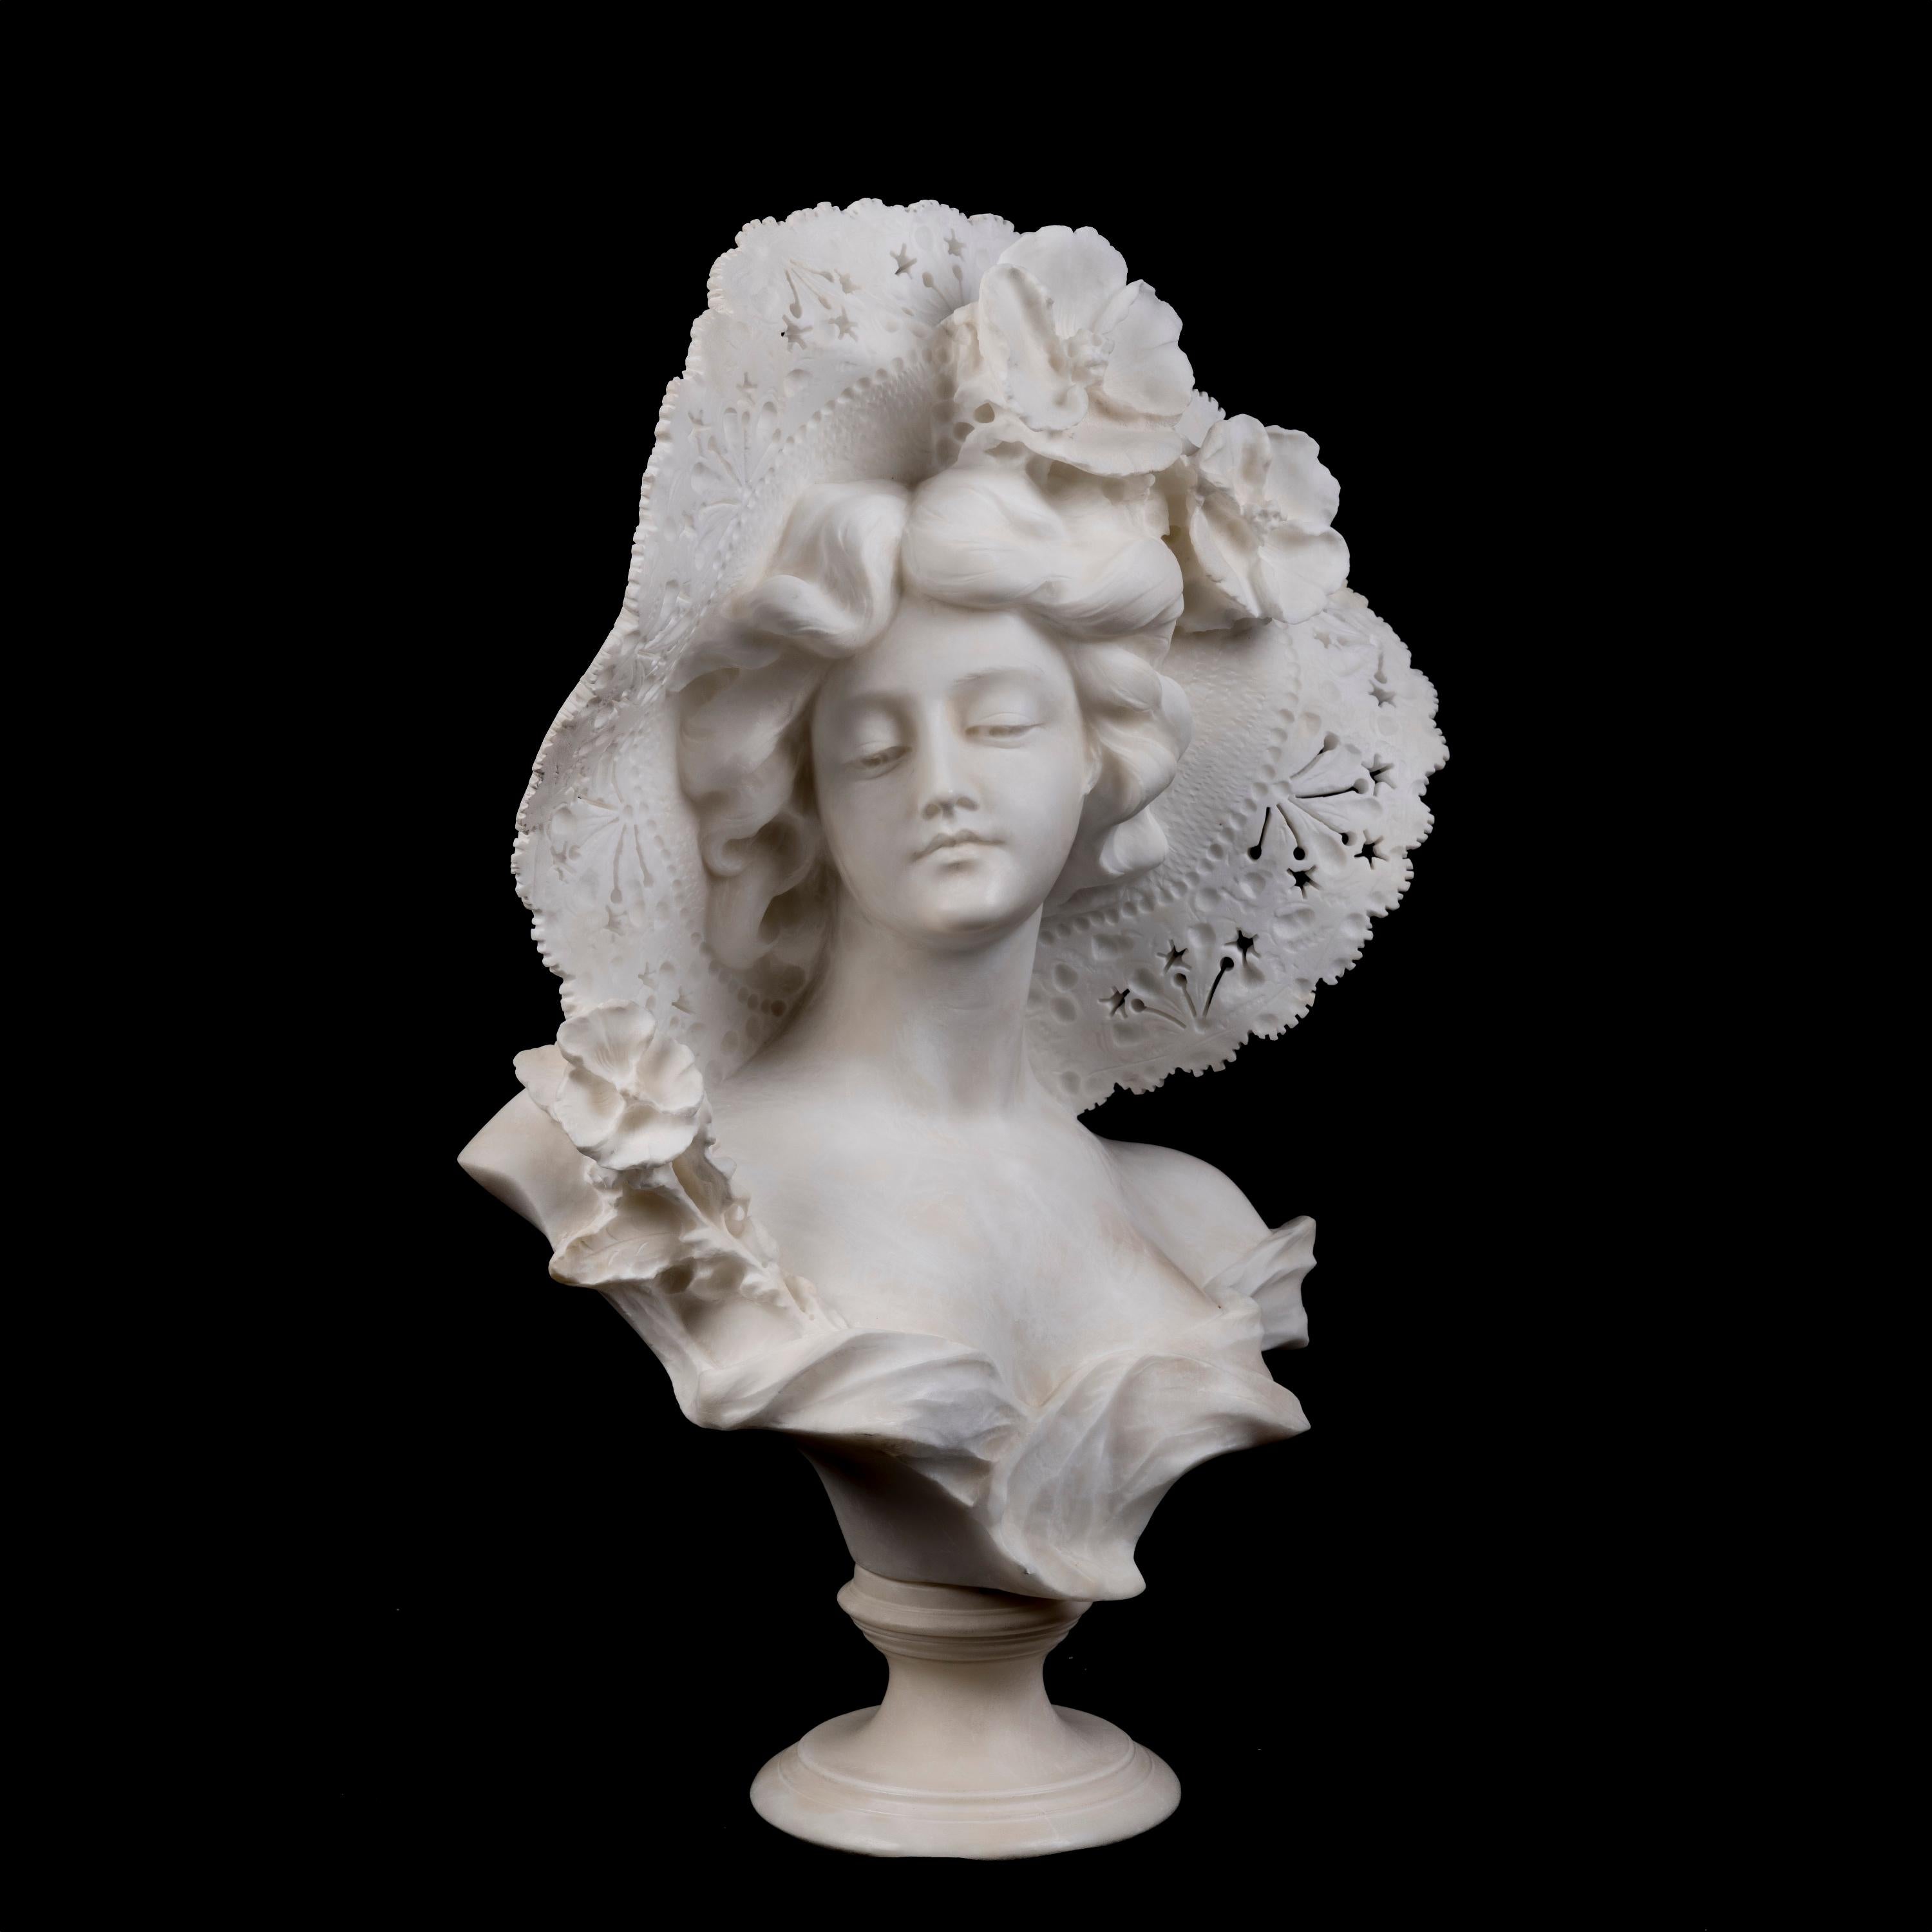 Buste en albâtre d'une dame élégante
Adolfo Cipriani

Le buste en albâtre repose sur un socle circulaire et représente une dame portant un chapeau à la mode orné de fleurs. Signé 